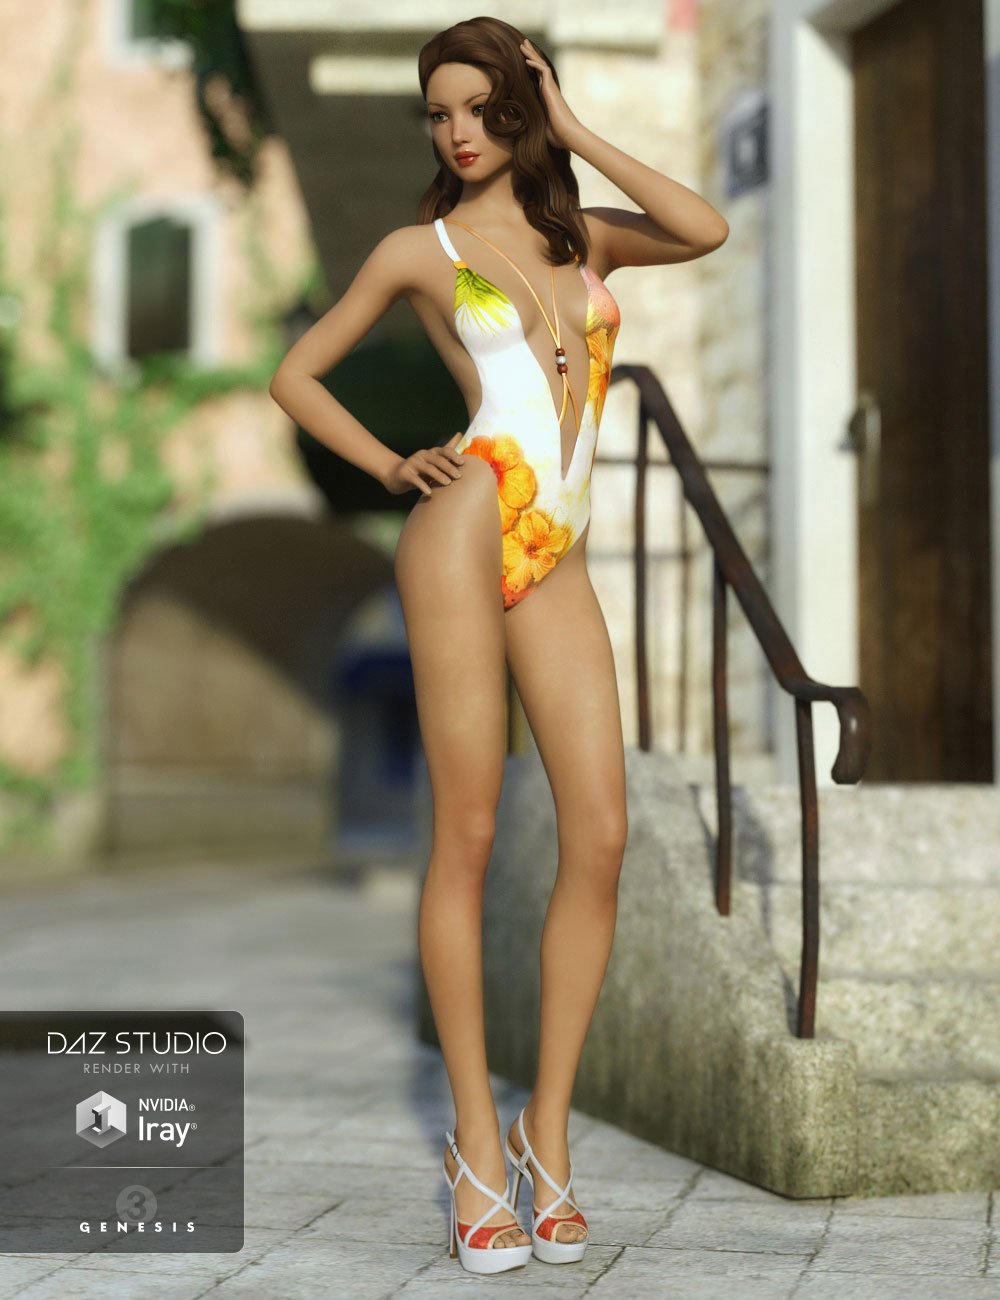 FWSA Filia HD for Sunny 7 by: Fred Winkler ArtSabby, 3D Models by Daz 3D